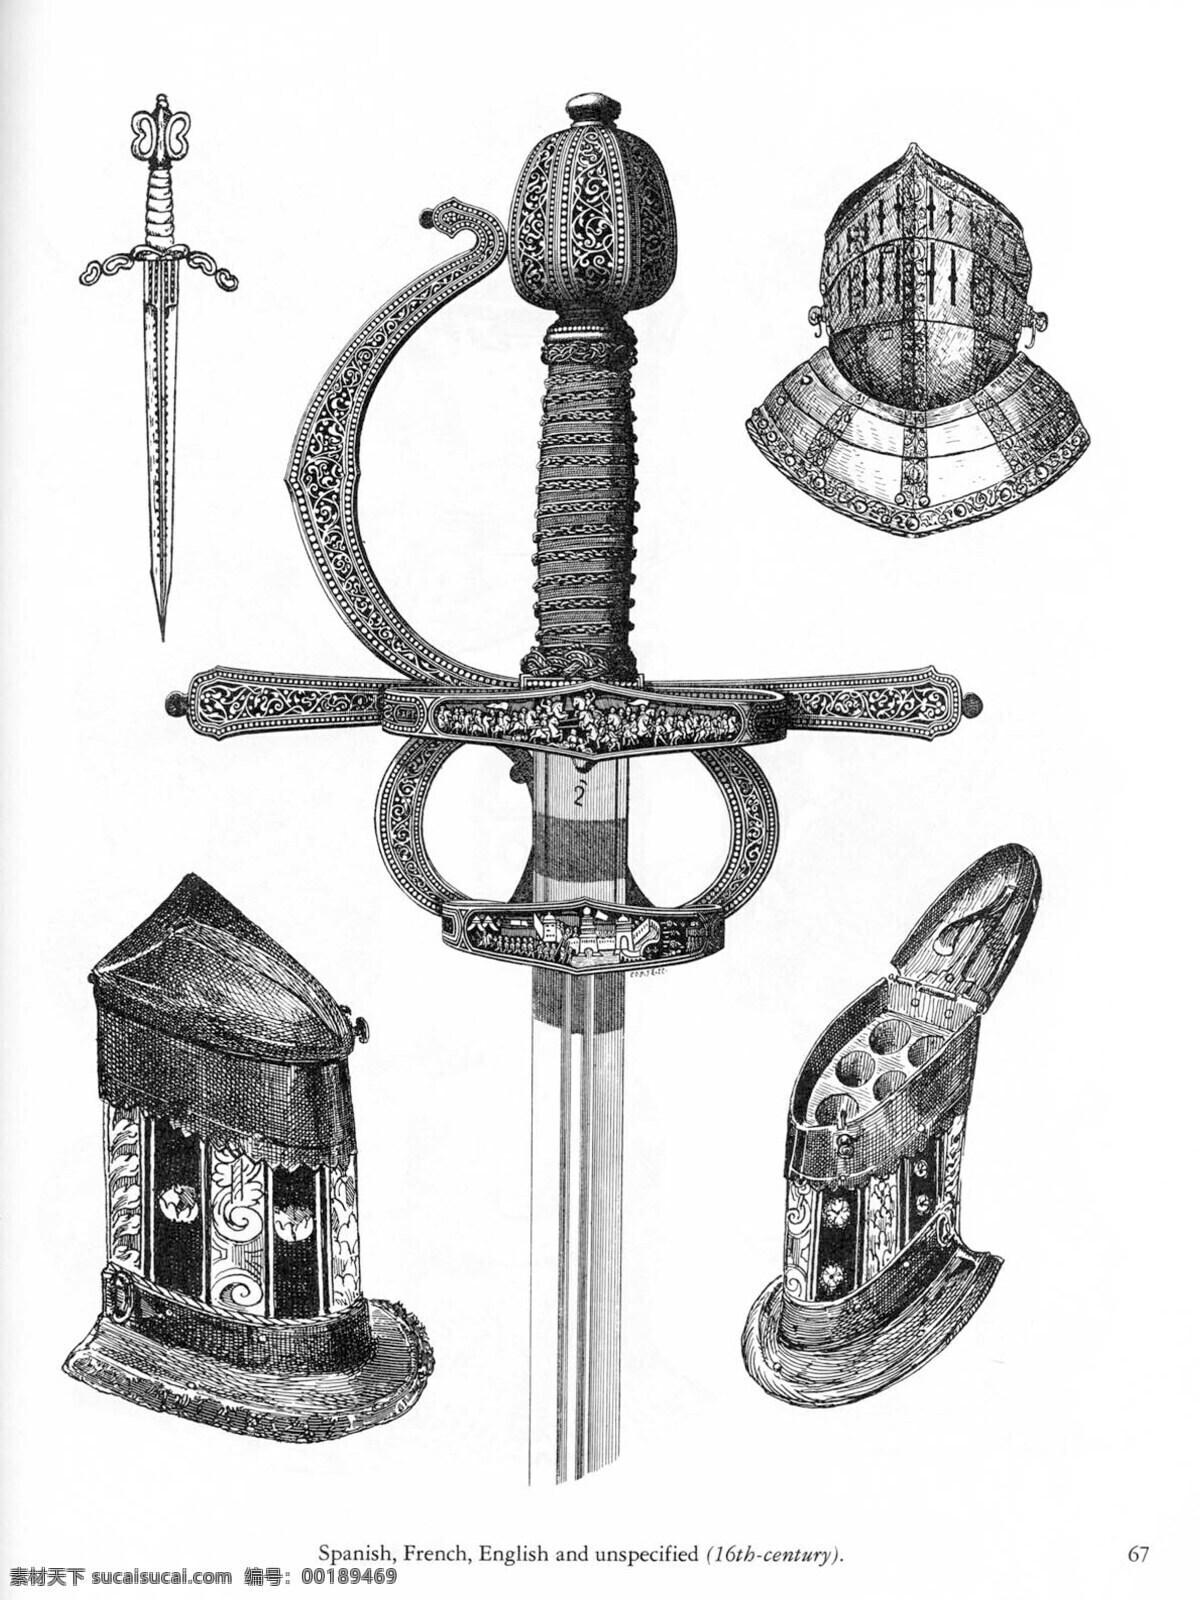 欧洲 古代 兵器 盔甲 骑士剑 欧洲骑士文化 传统文化 文化艺术